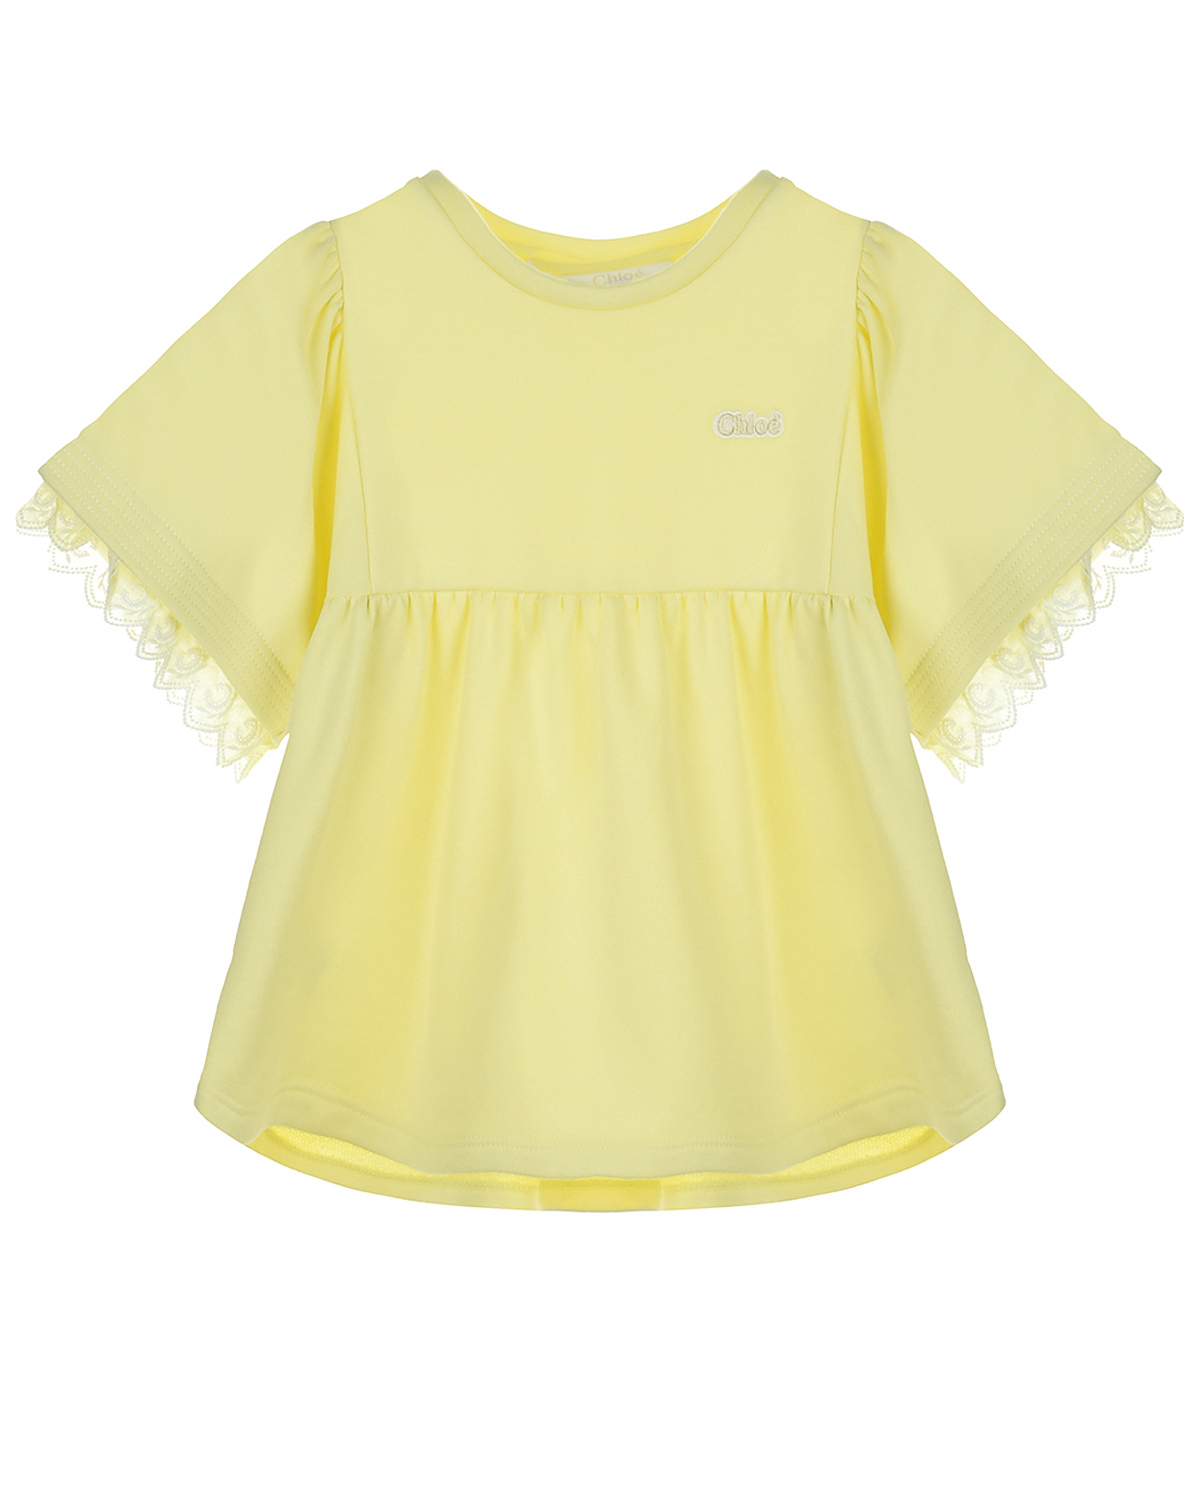 Купить Желтая блуза с кружевом на рукавах Chloe детская, Желтый, 100%хлопок, 88%хлопок+12%полиэстер